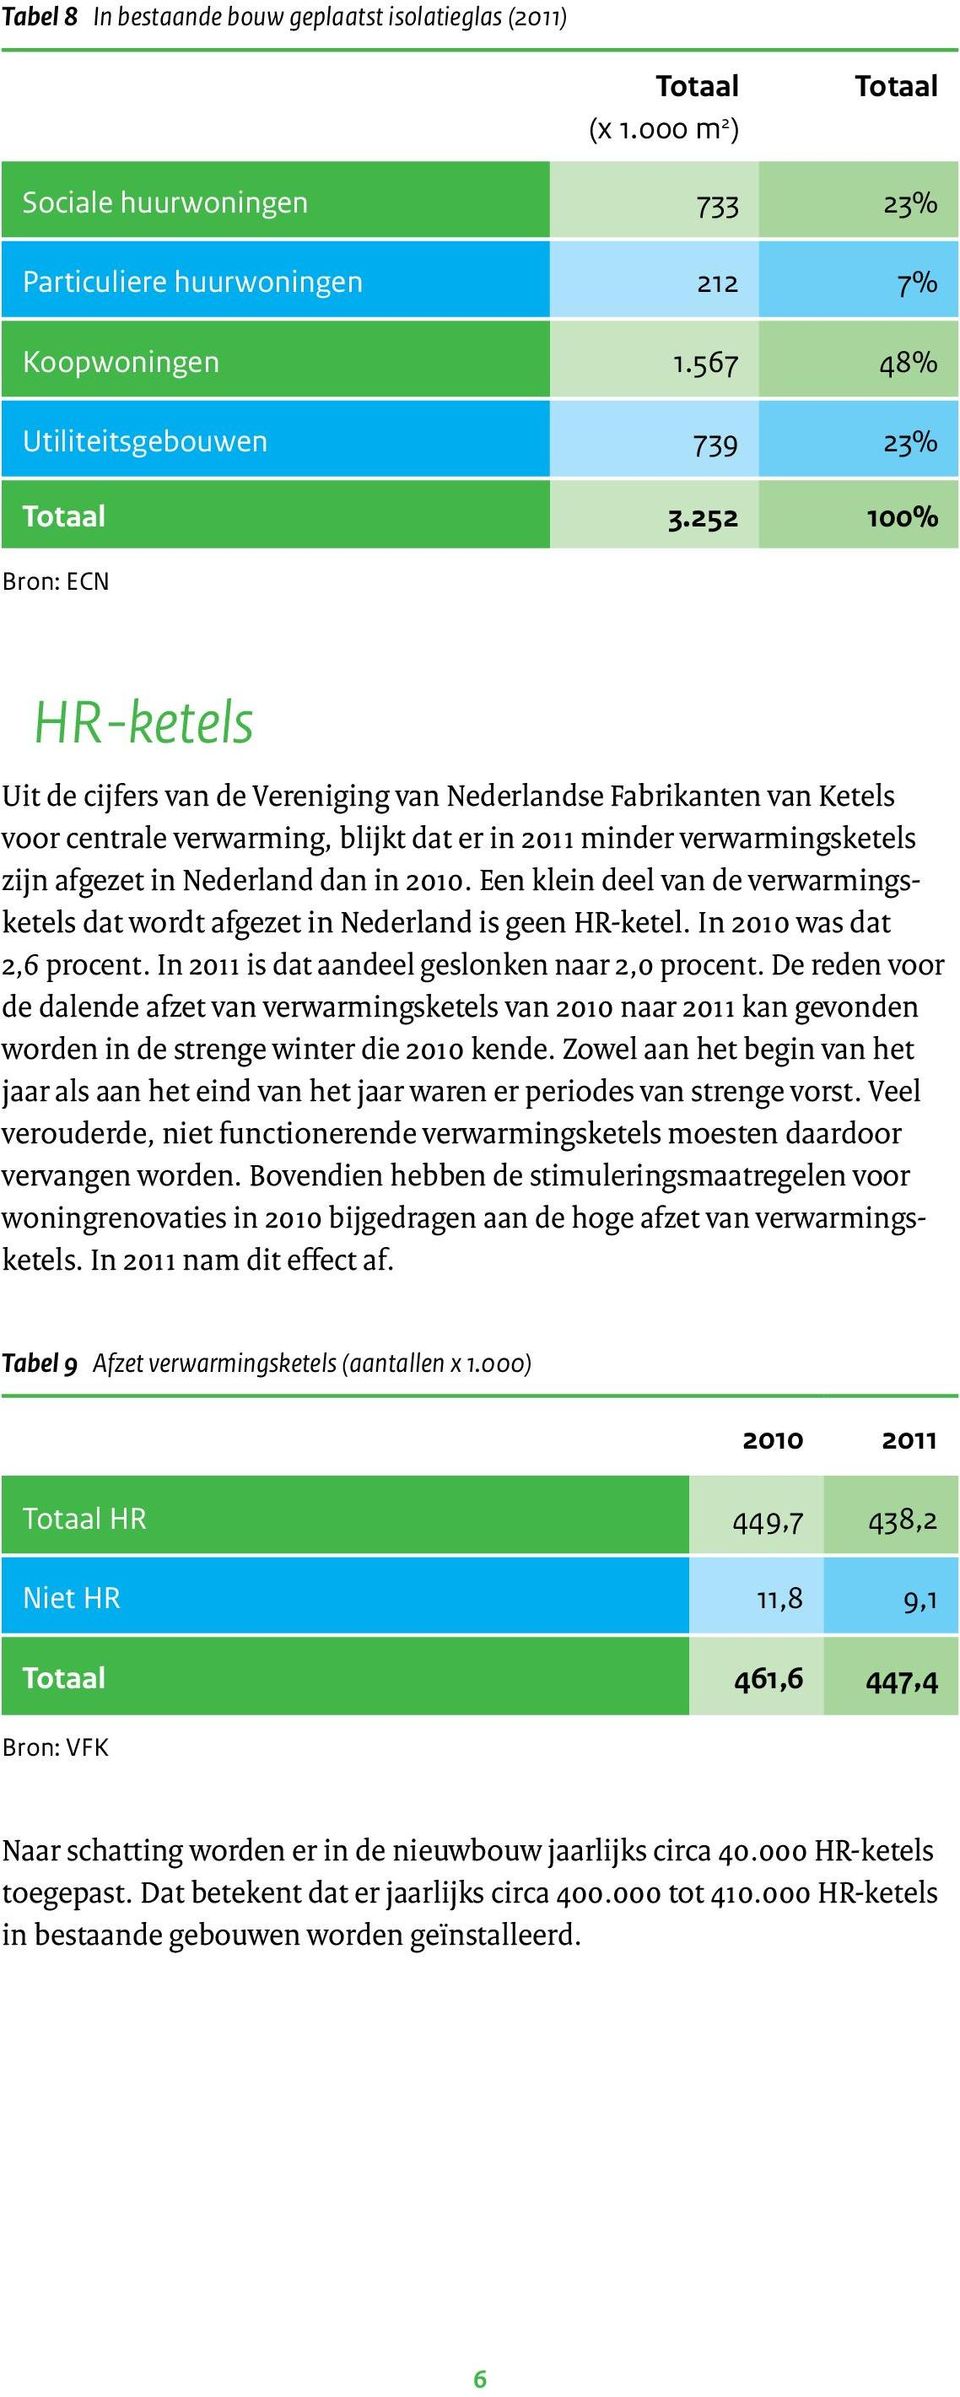 dan in 2010. Een klein deel van de verwarmingsketels dat wordt afgezet in Nederland is geen HR-ketel. In 2010 was dat 2,6 procent. In 2011 is dat aandeel geslonken naar 2,0 procent.